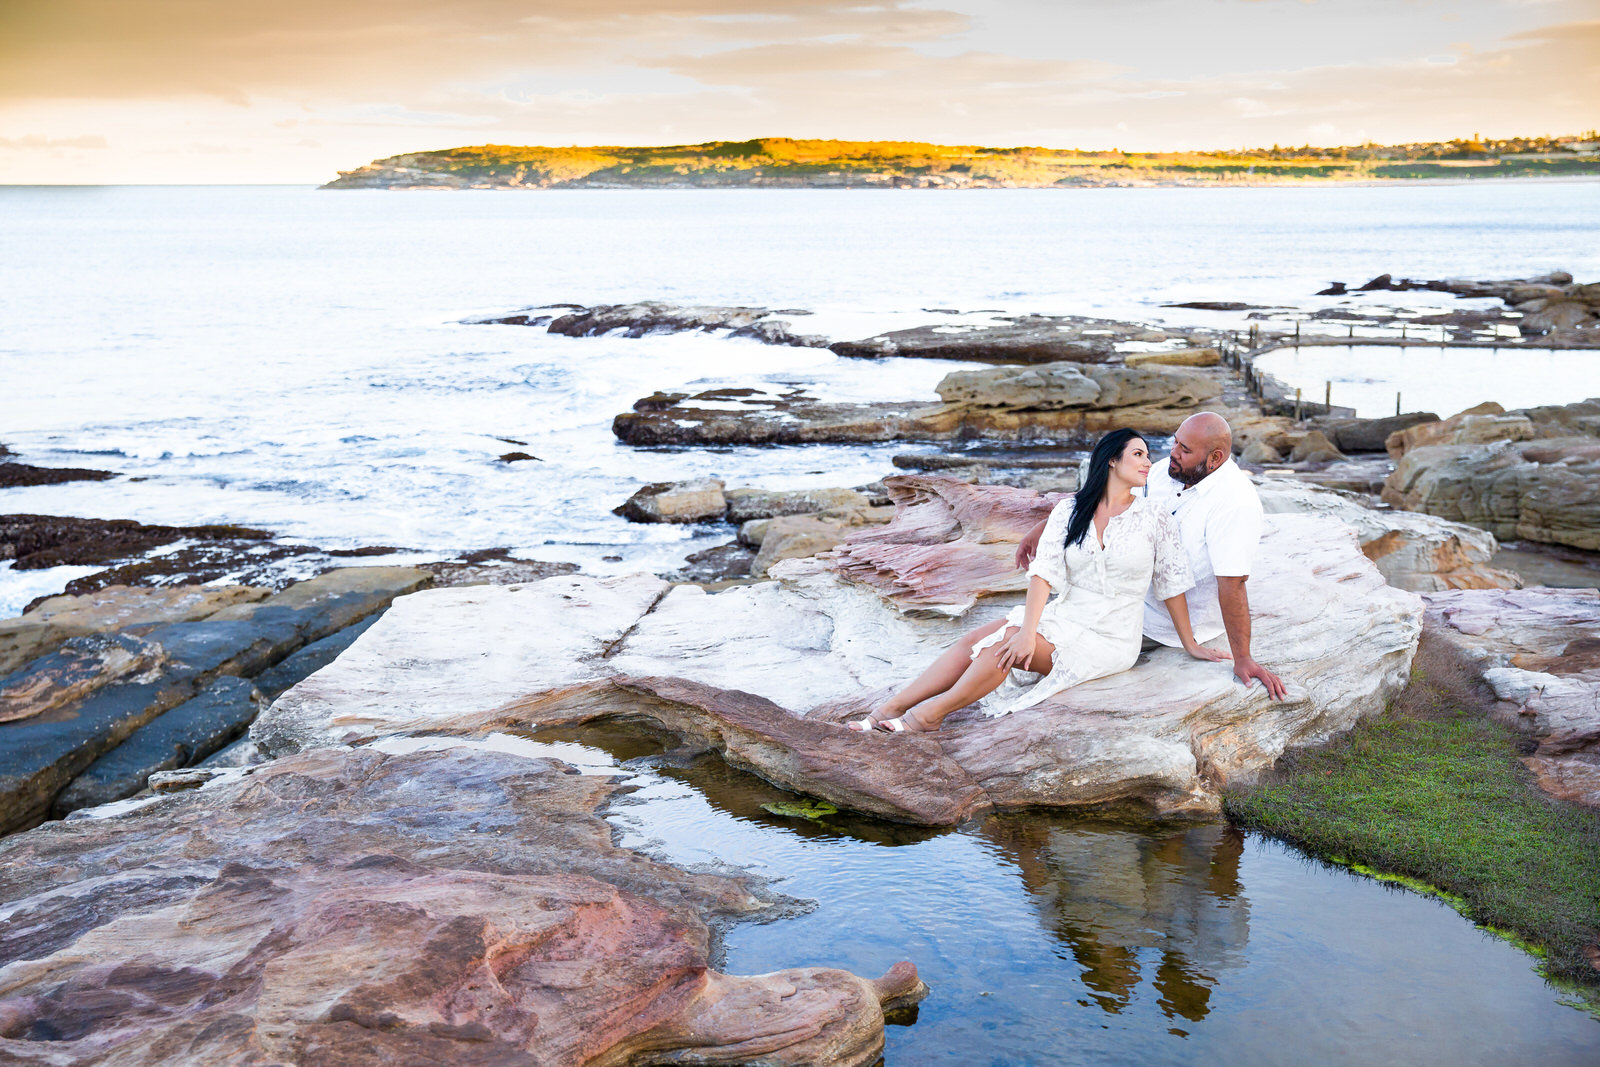  Pre-Wedding Photoshoot - Sydney Wedding Photographer - Jennifer Lam Photography 